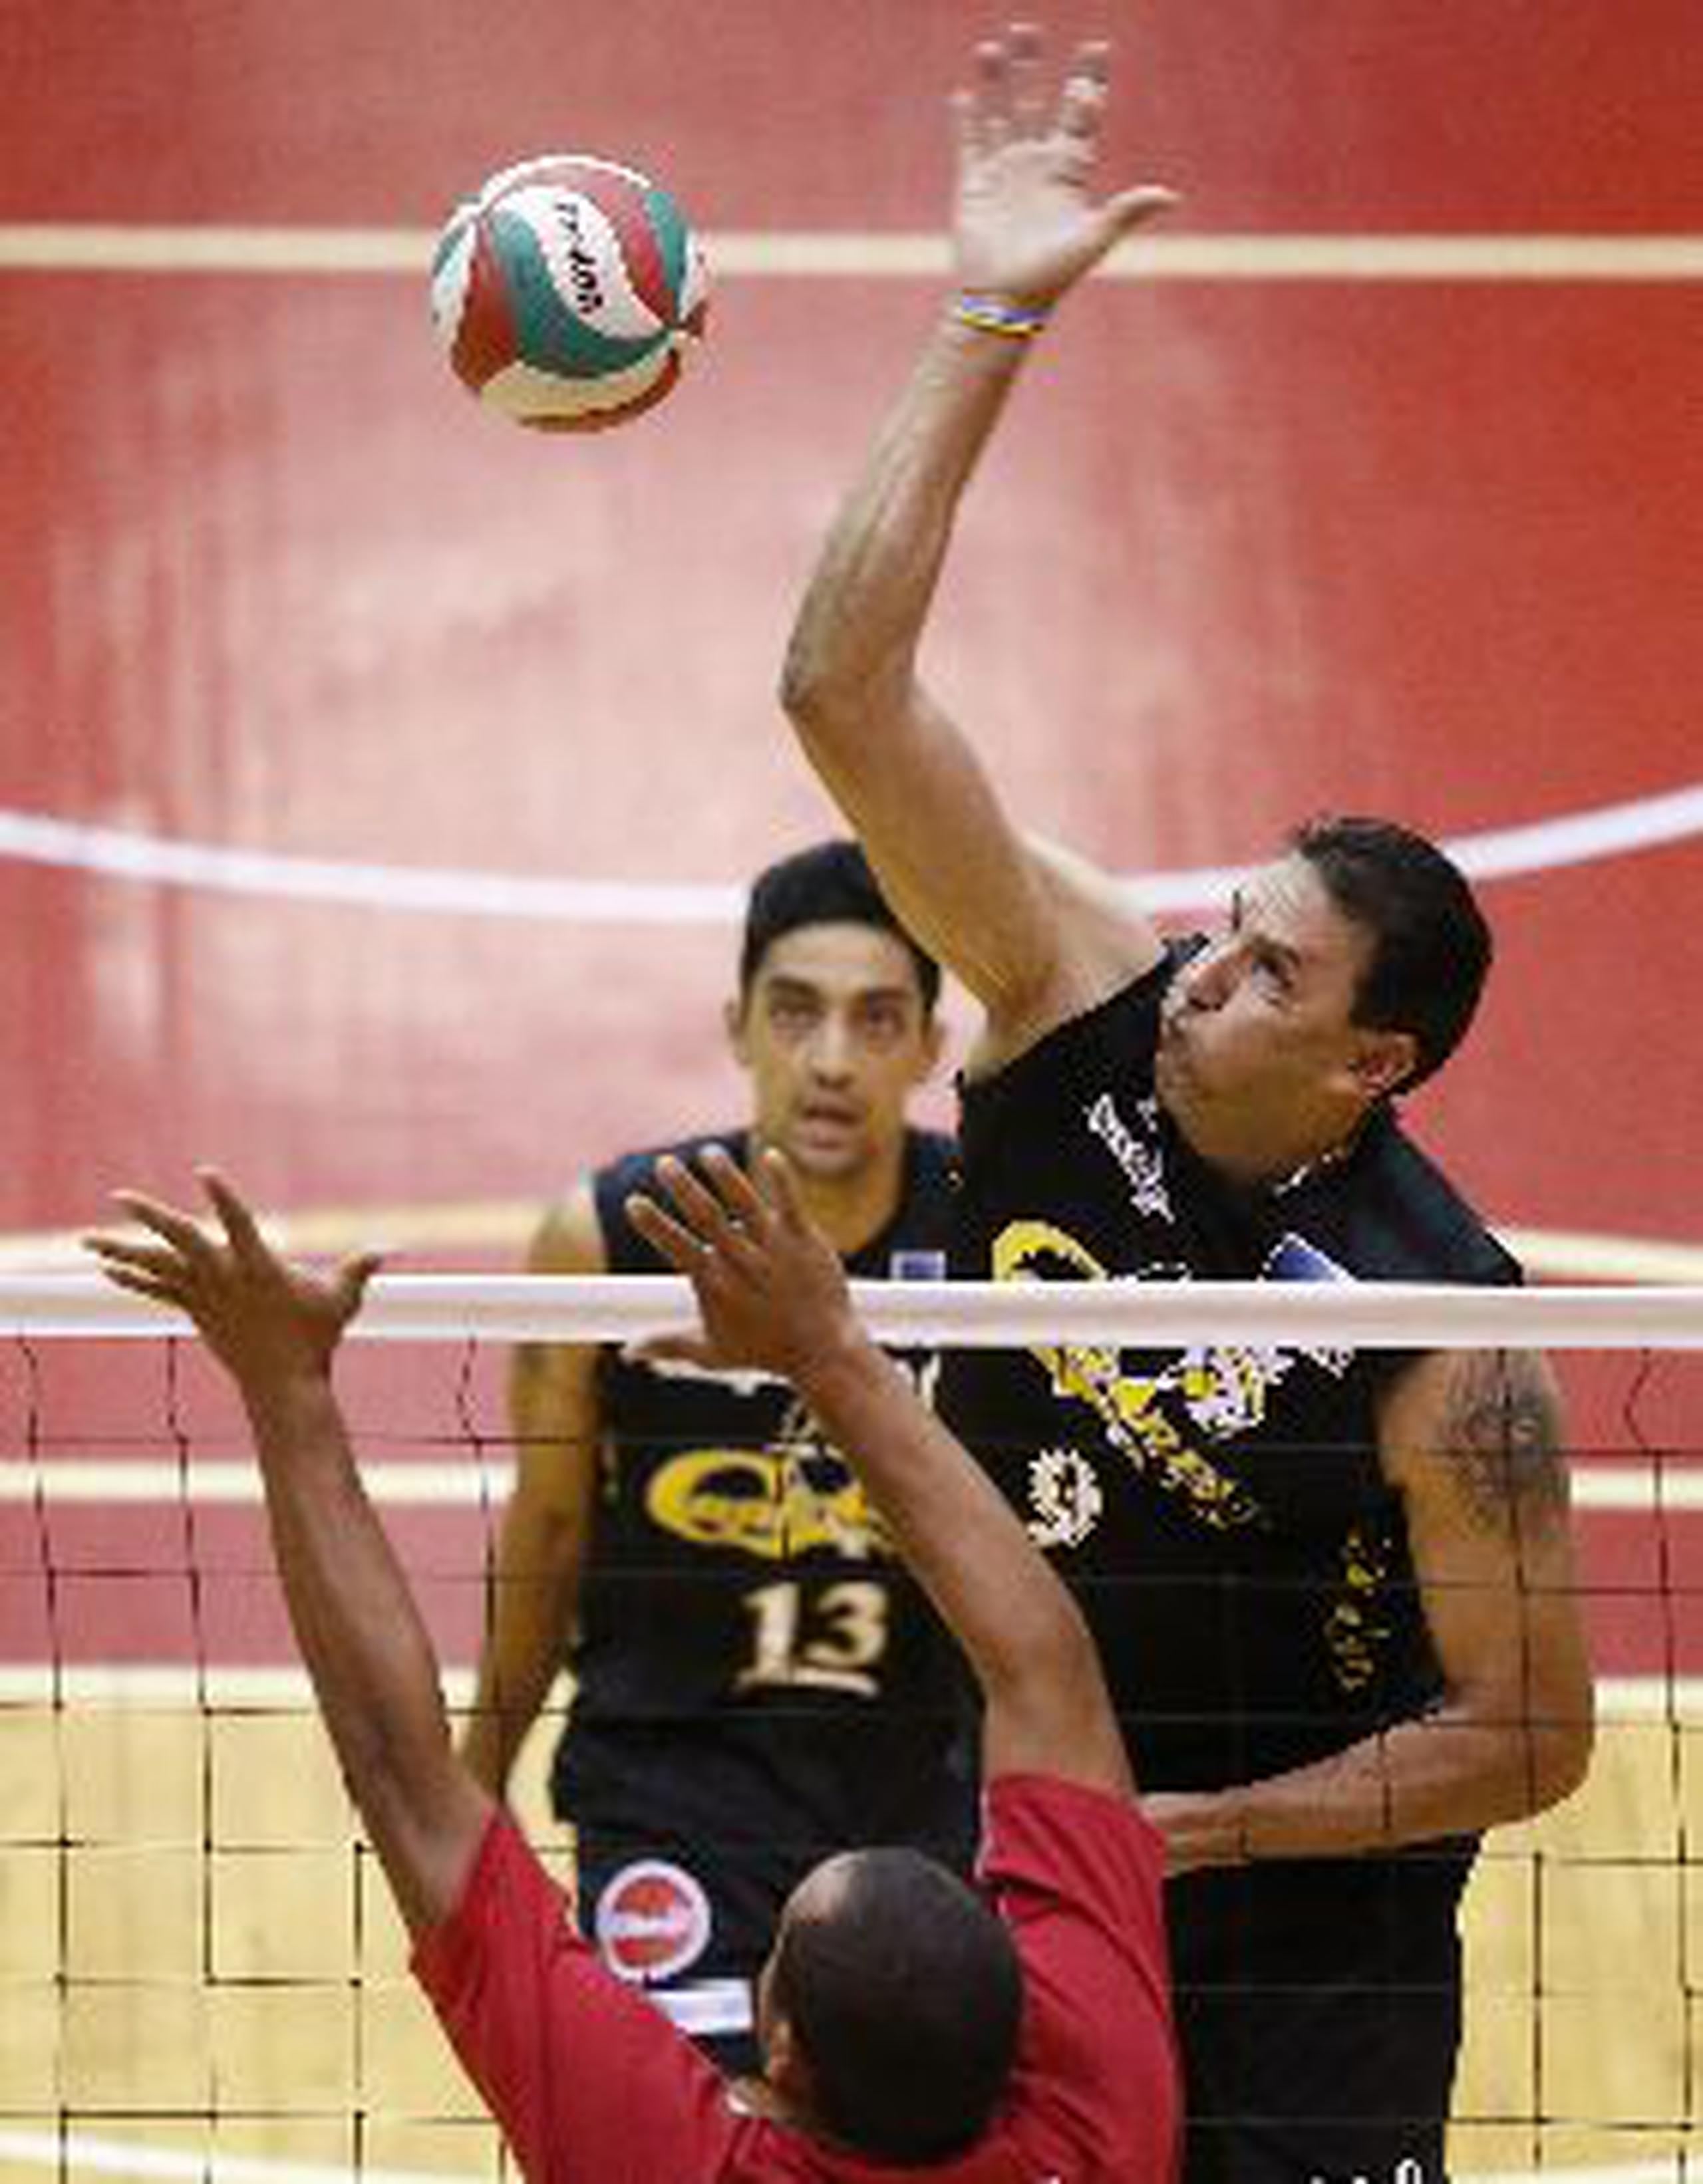  Luis Rodríguez, rematando, participa con su cuarto equipo en la LVSM.&nbsp;<font color="yellow">(lino.prieto@gfrmedia.com)</font>